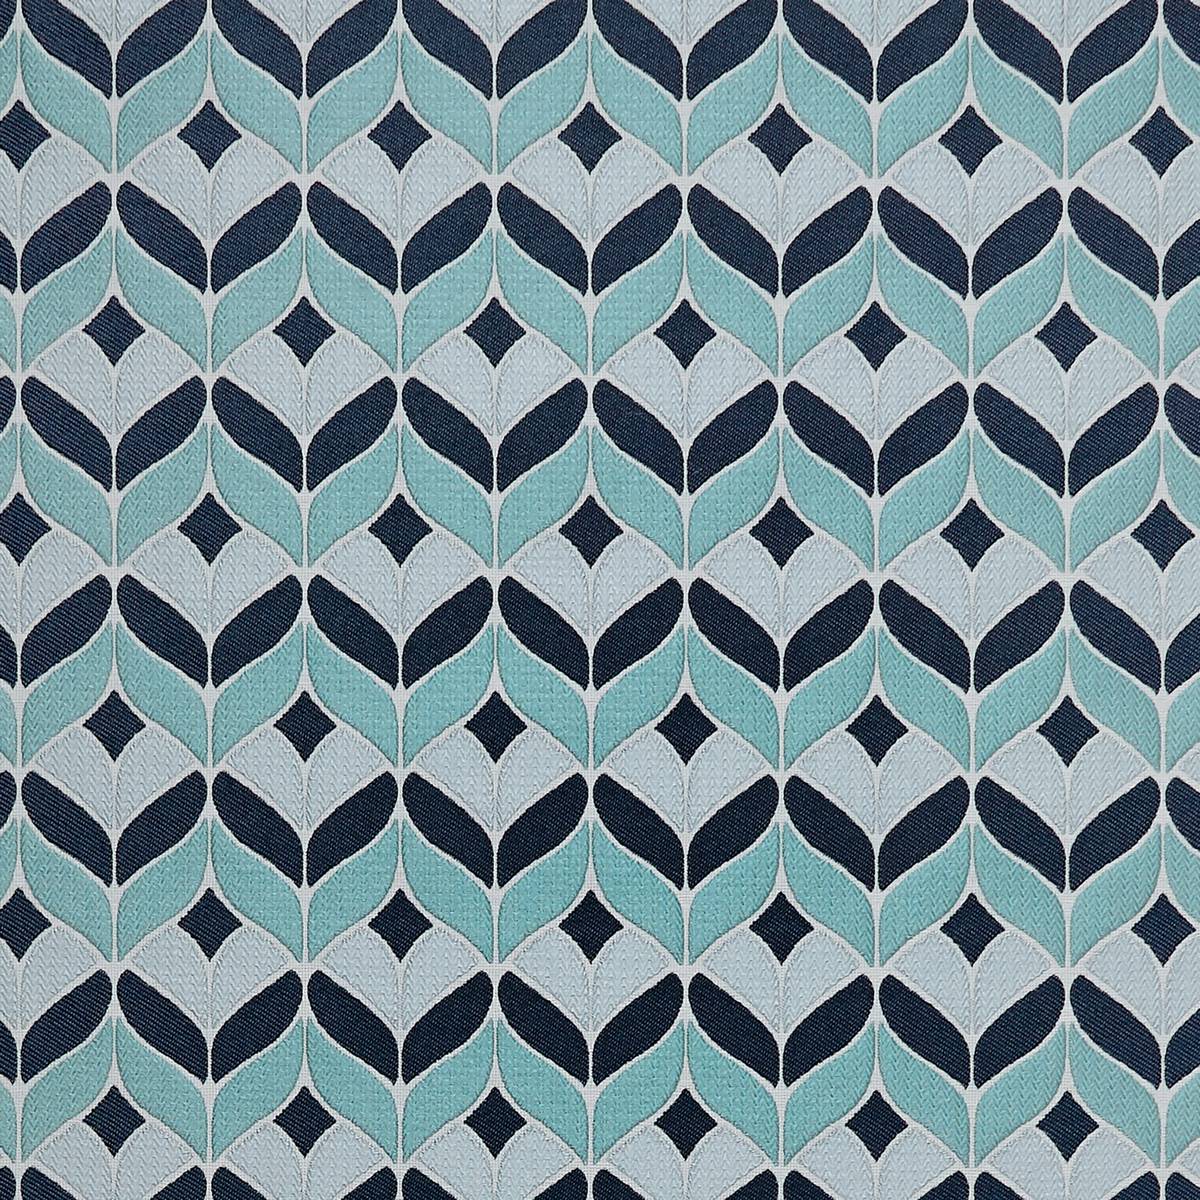 Illion Aqua Fabric by Ashley Wilde